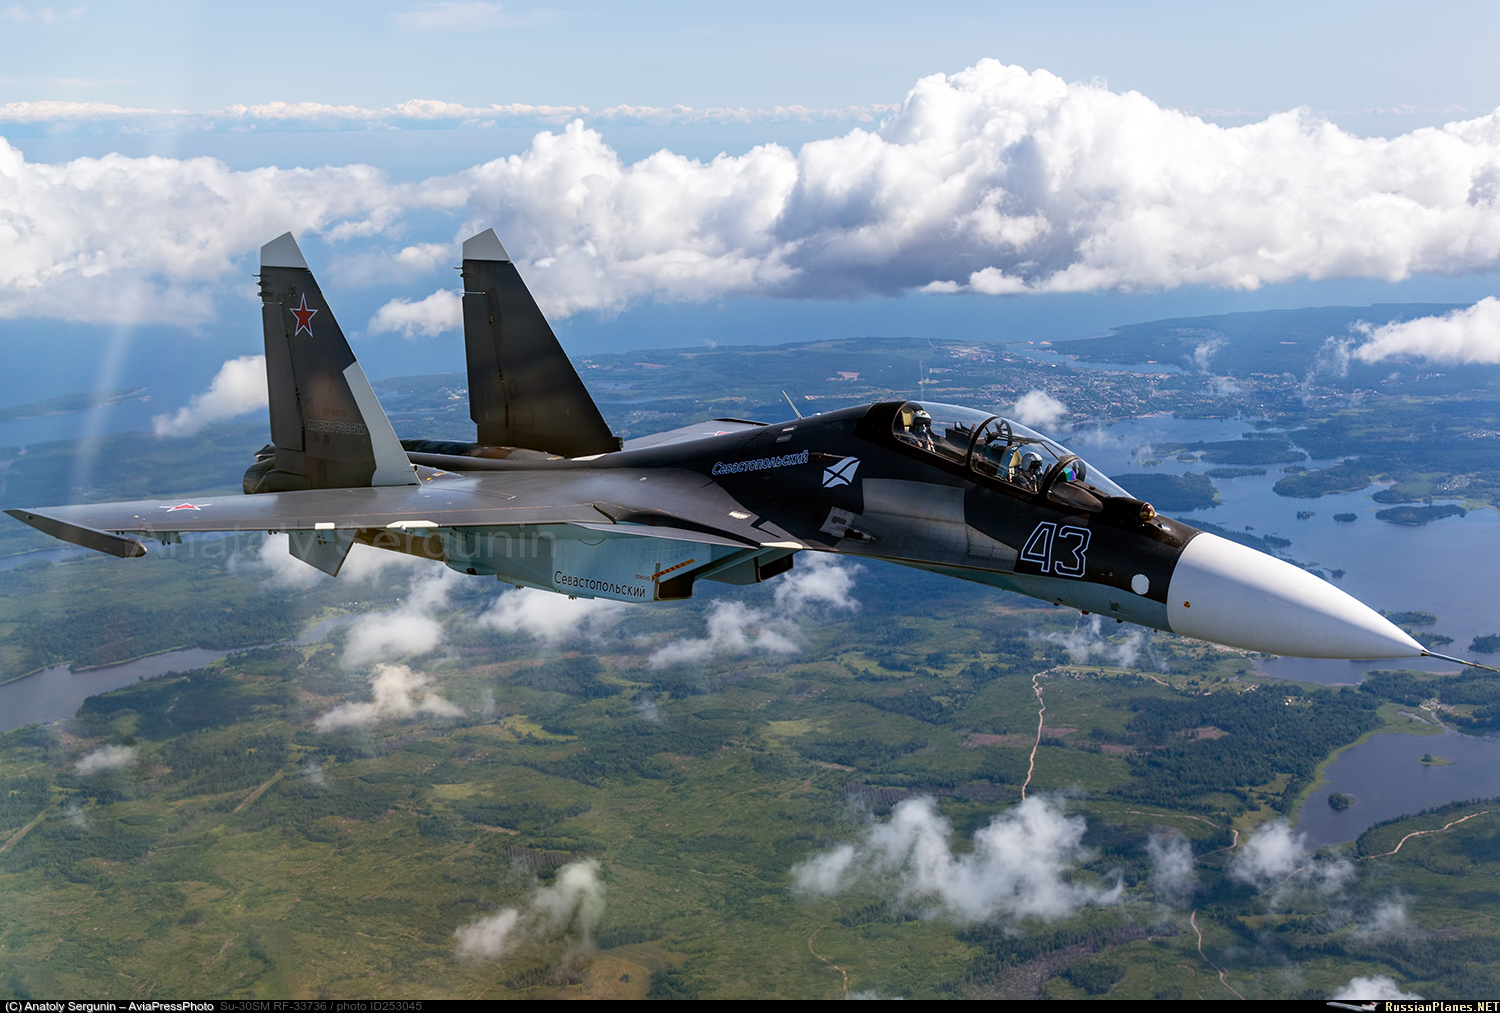 30 бомбардировщиков. Истребитель Су-30см. Самолет Су 30 см. Су-30мки кабина. Су-30 двухдвигательный реактивный самолёт.